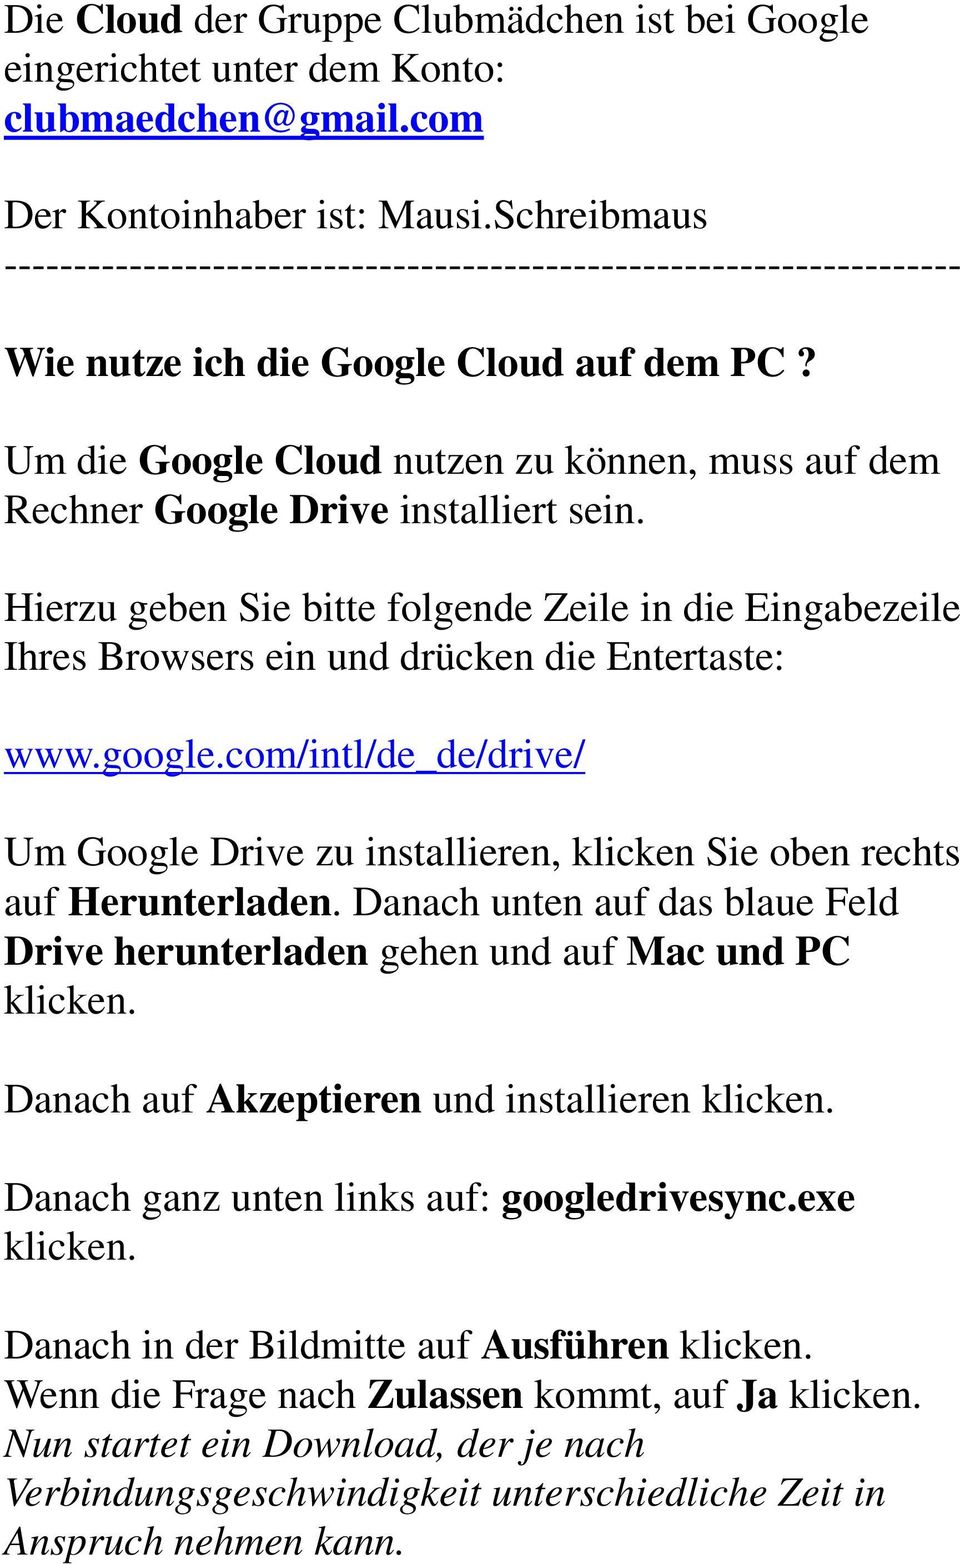 Um die Google Cloud nutzen zu können, muss auf dem Rechner Google Drive installiert sein. Hierzu geben Sie bitte folgende Zeile in die Eingabezeile Ihres Browsers ein und drücken die Entertaste: www.